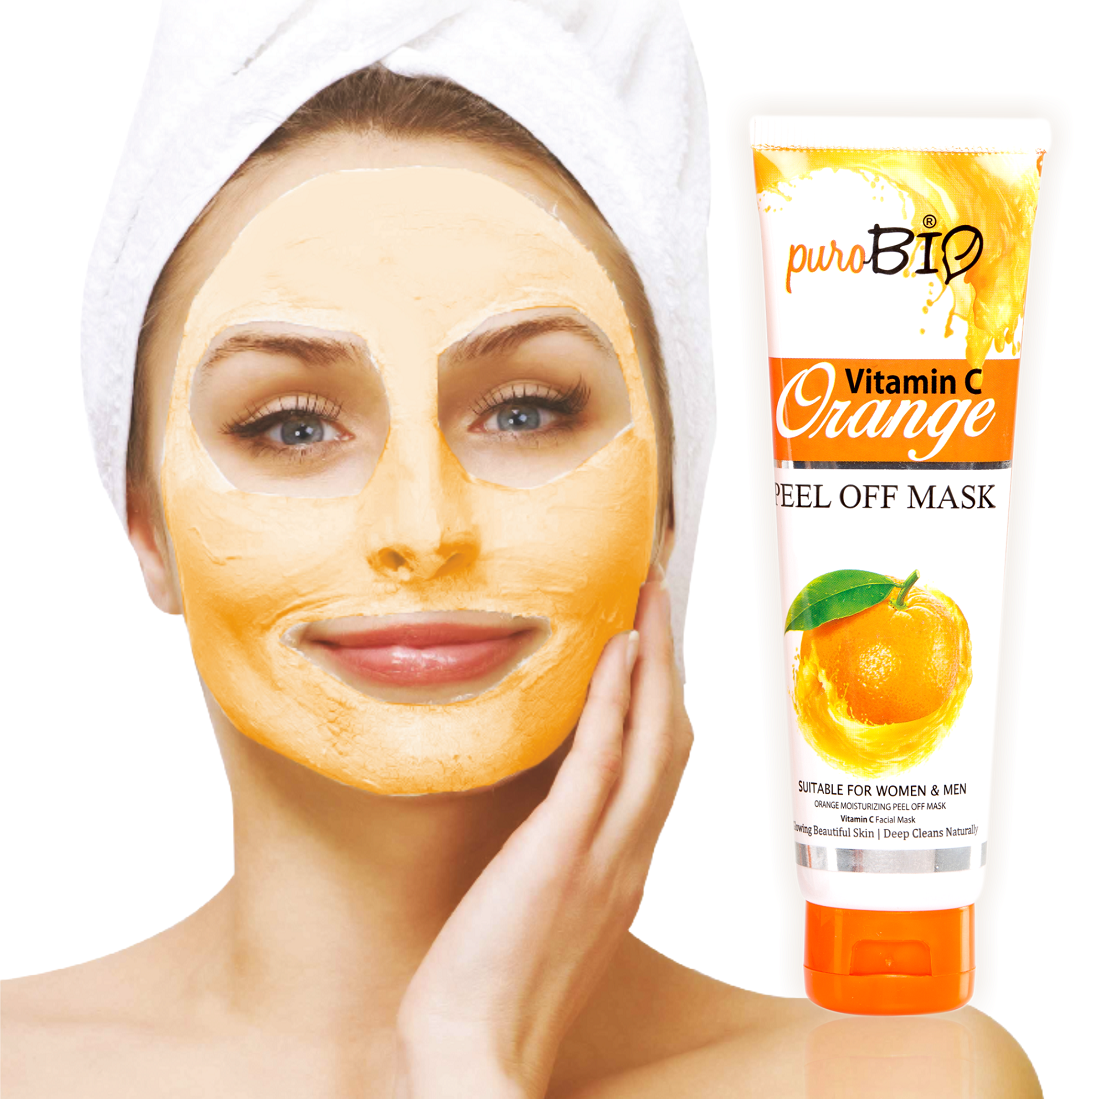 Vitamin-C Orange peel off mask